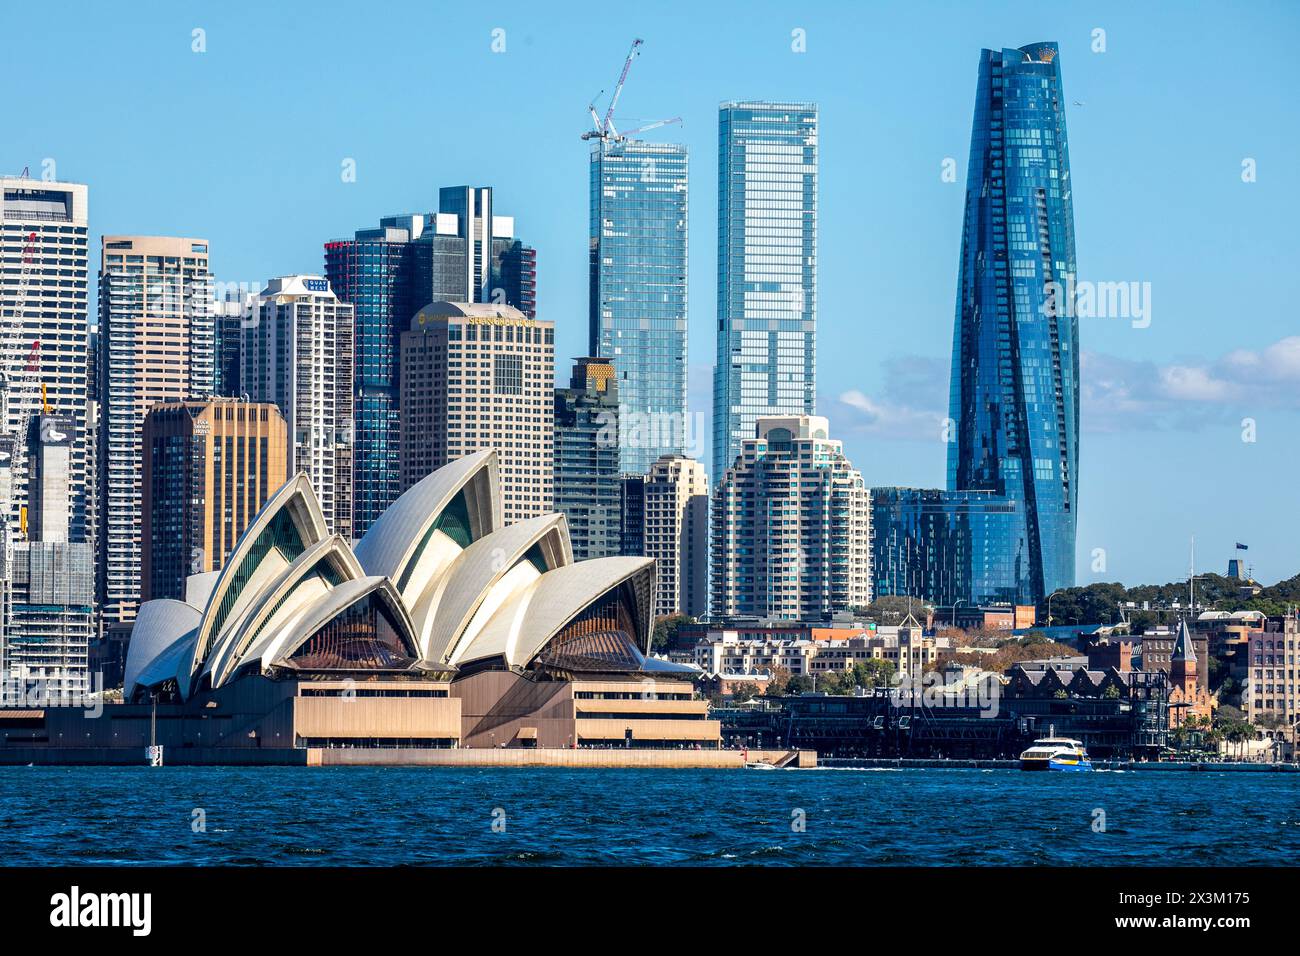 La città e il porto di Sydney, il paesaggio urbano degli alti grattacieli di Sydney insieme alla Sydney Opera House a Bednnelong Point, New South Wales, Australia Foto Stock